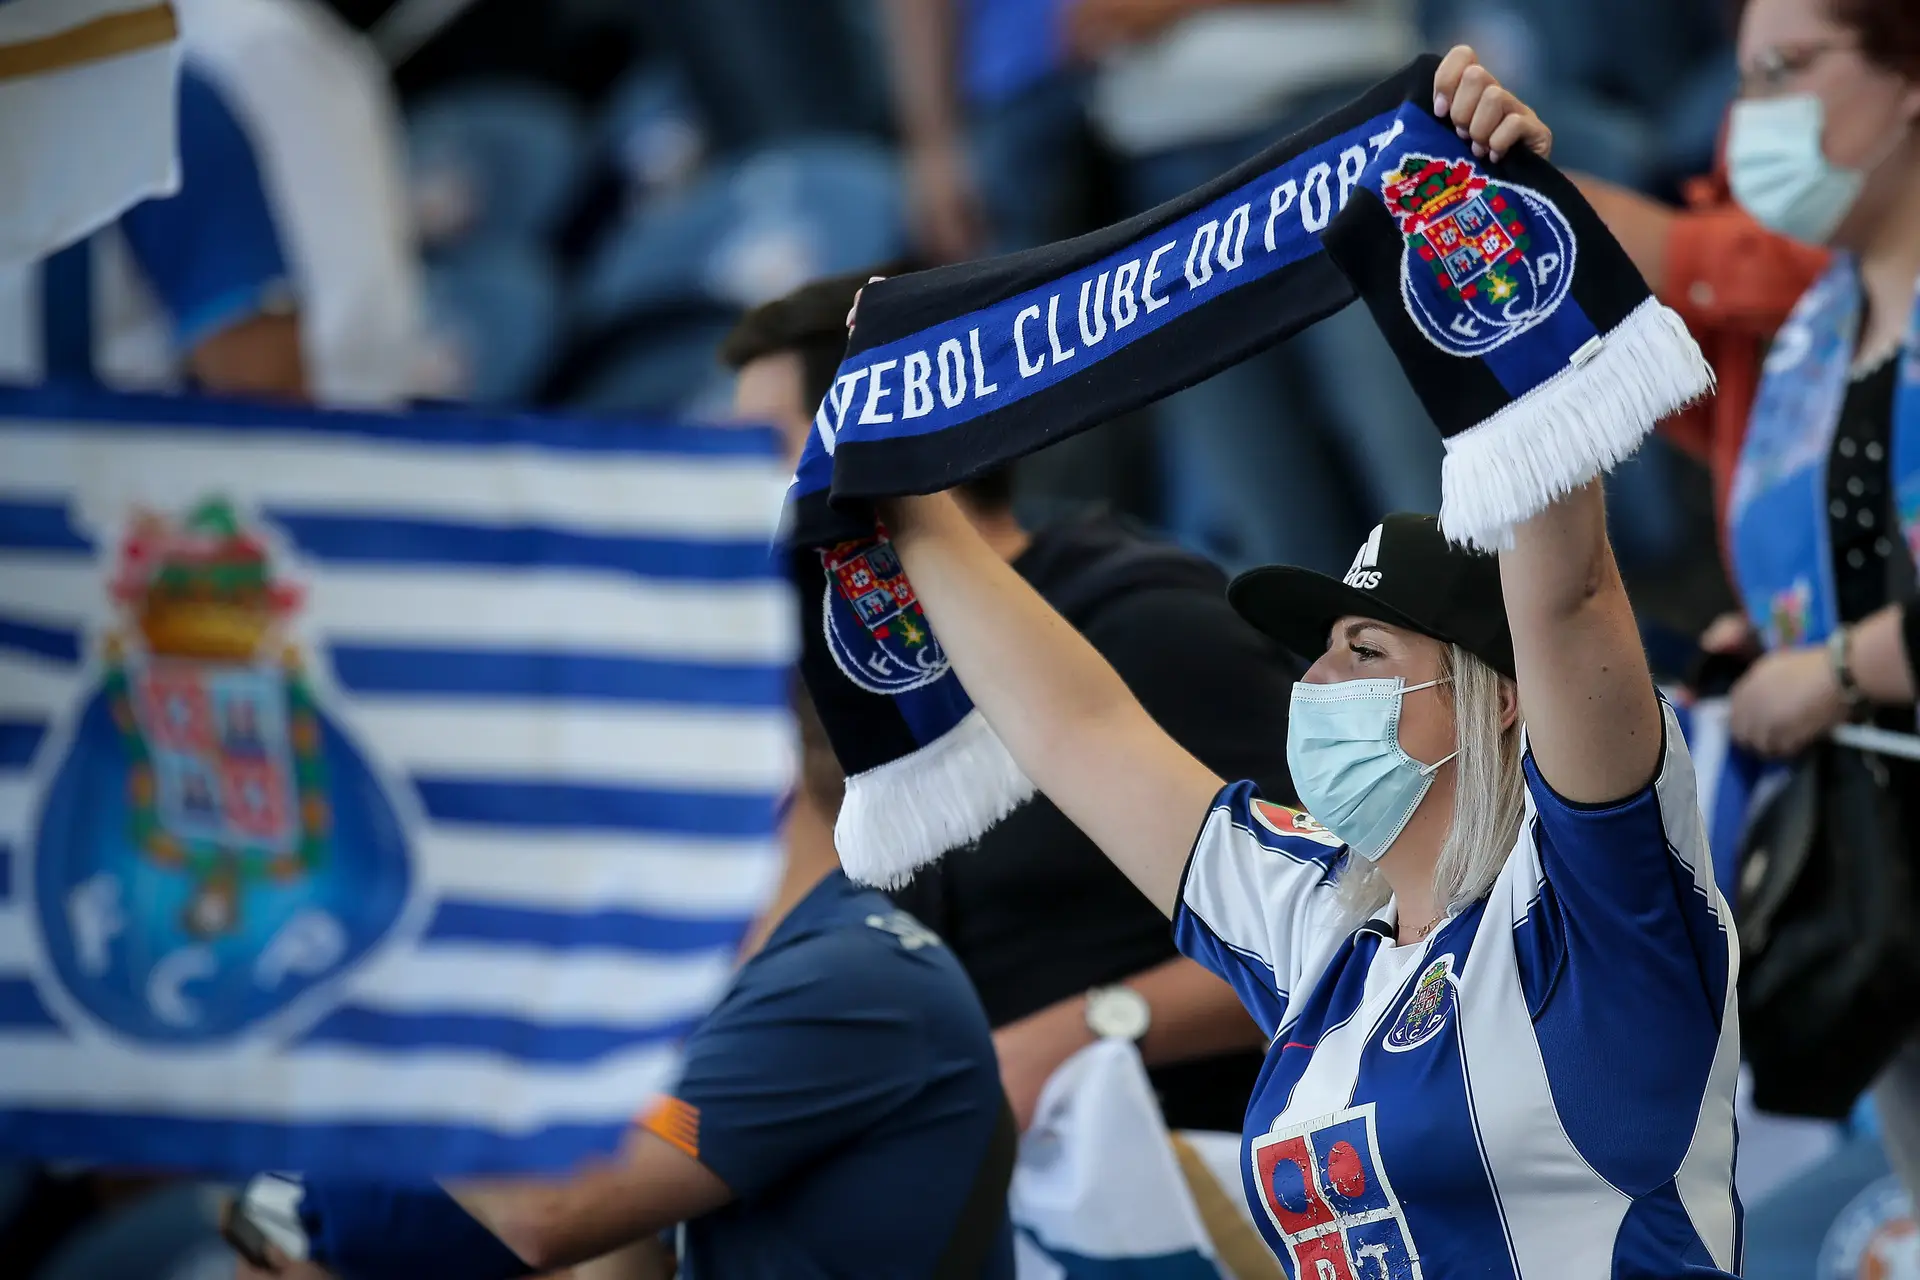 FC Porto - O País - A verdade como notícia